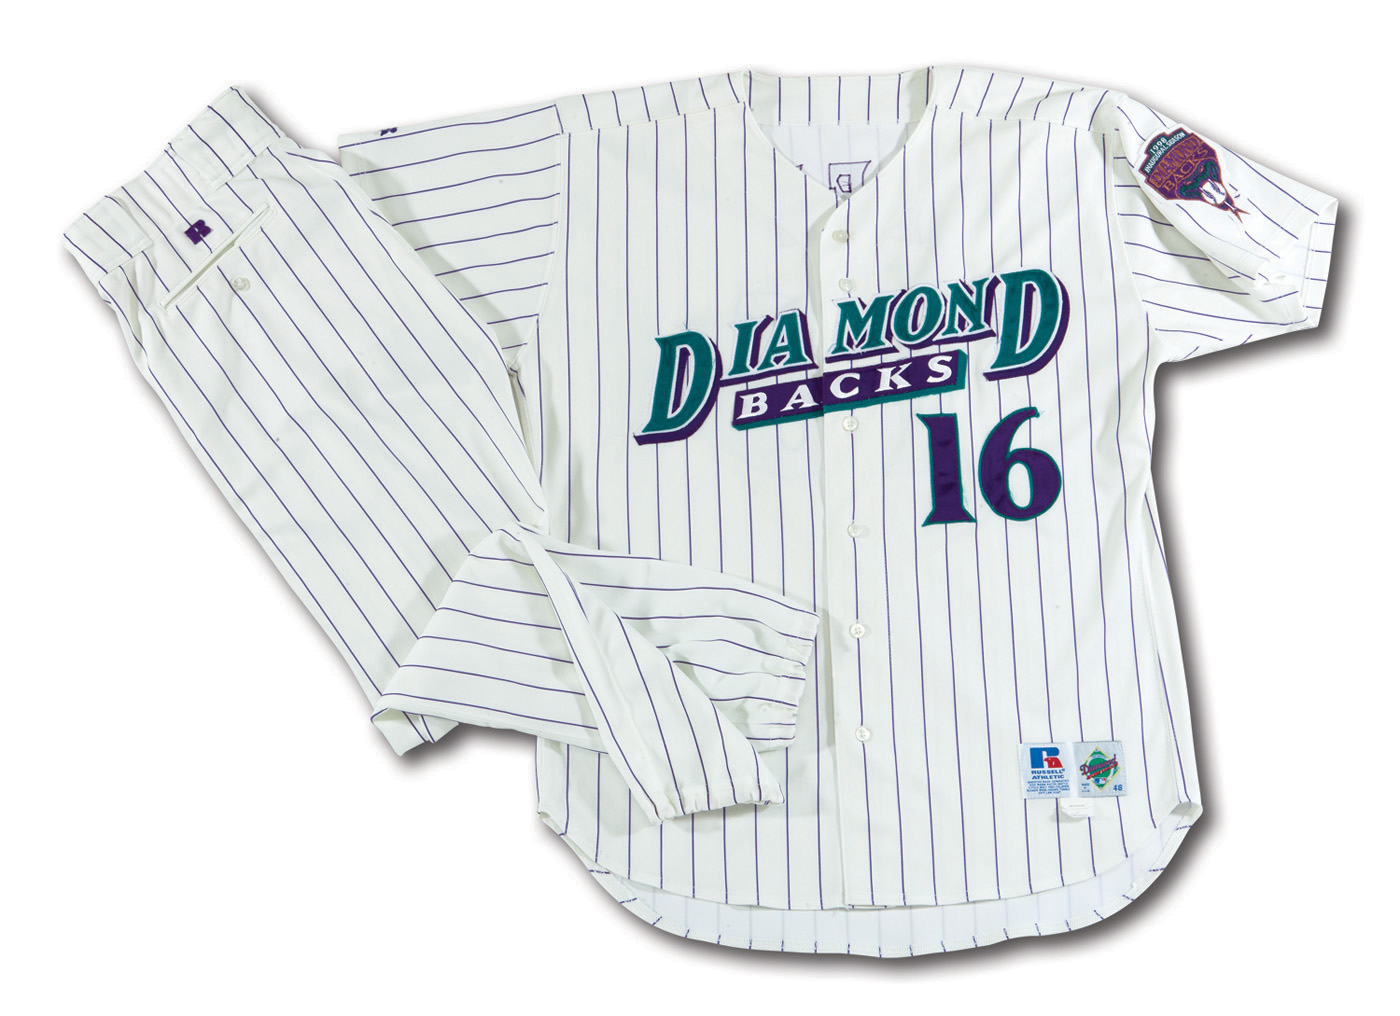 1998 diamondbacks jersey